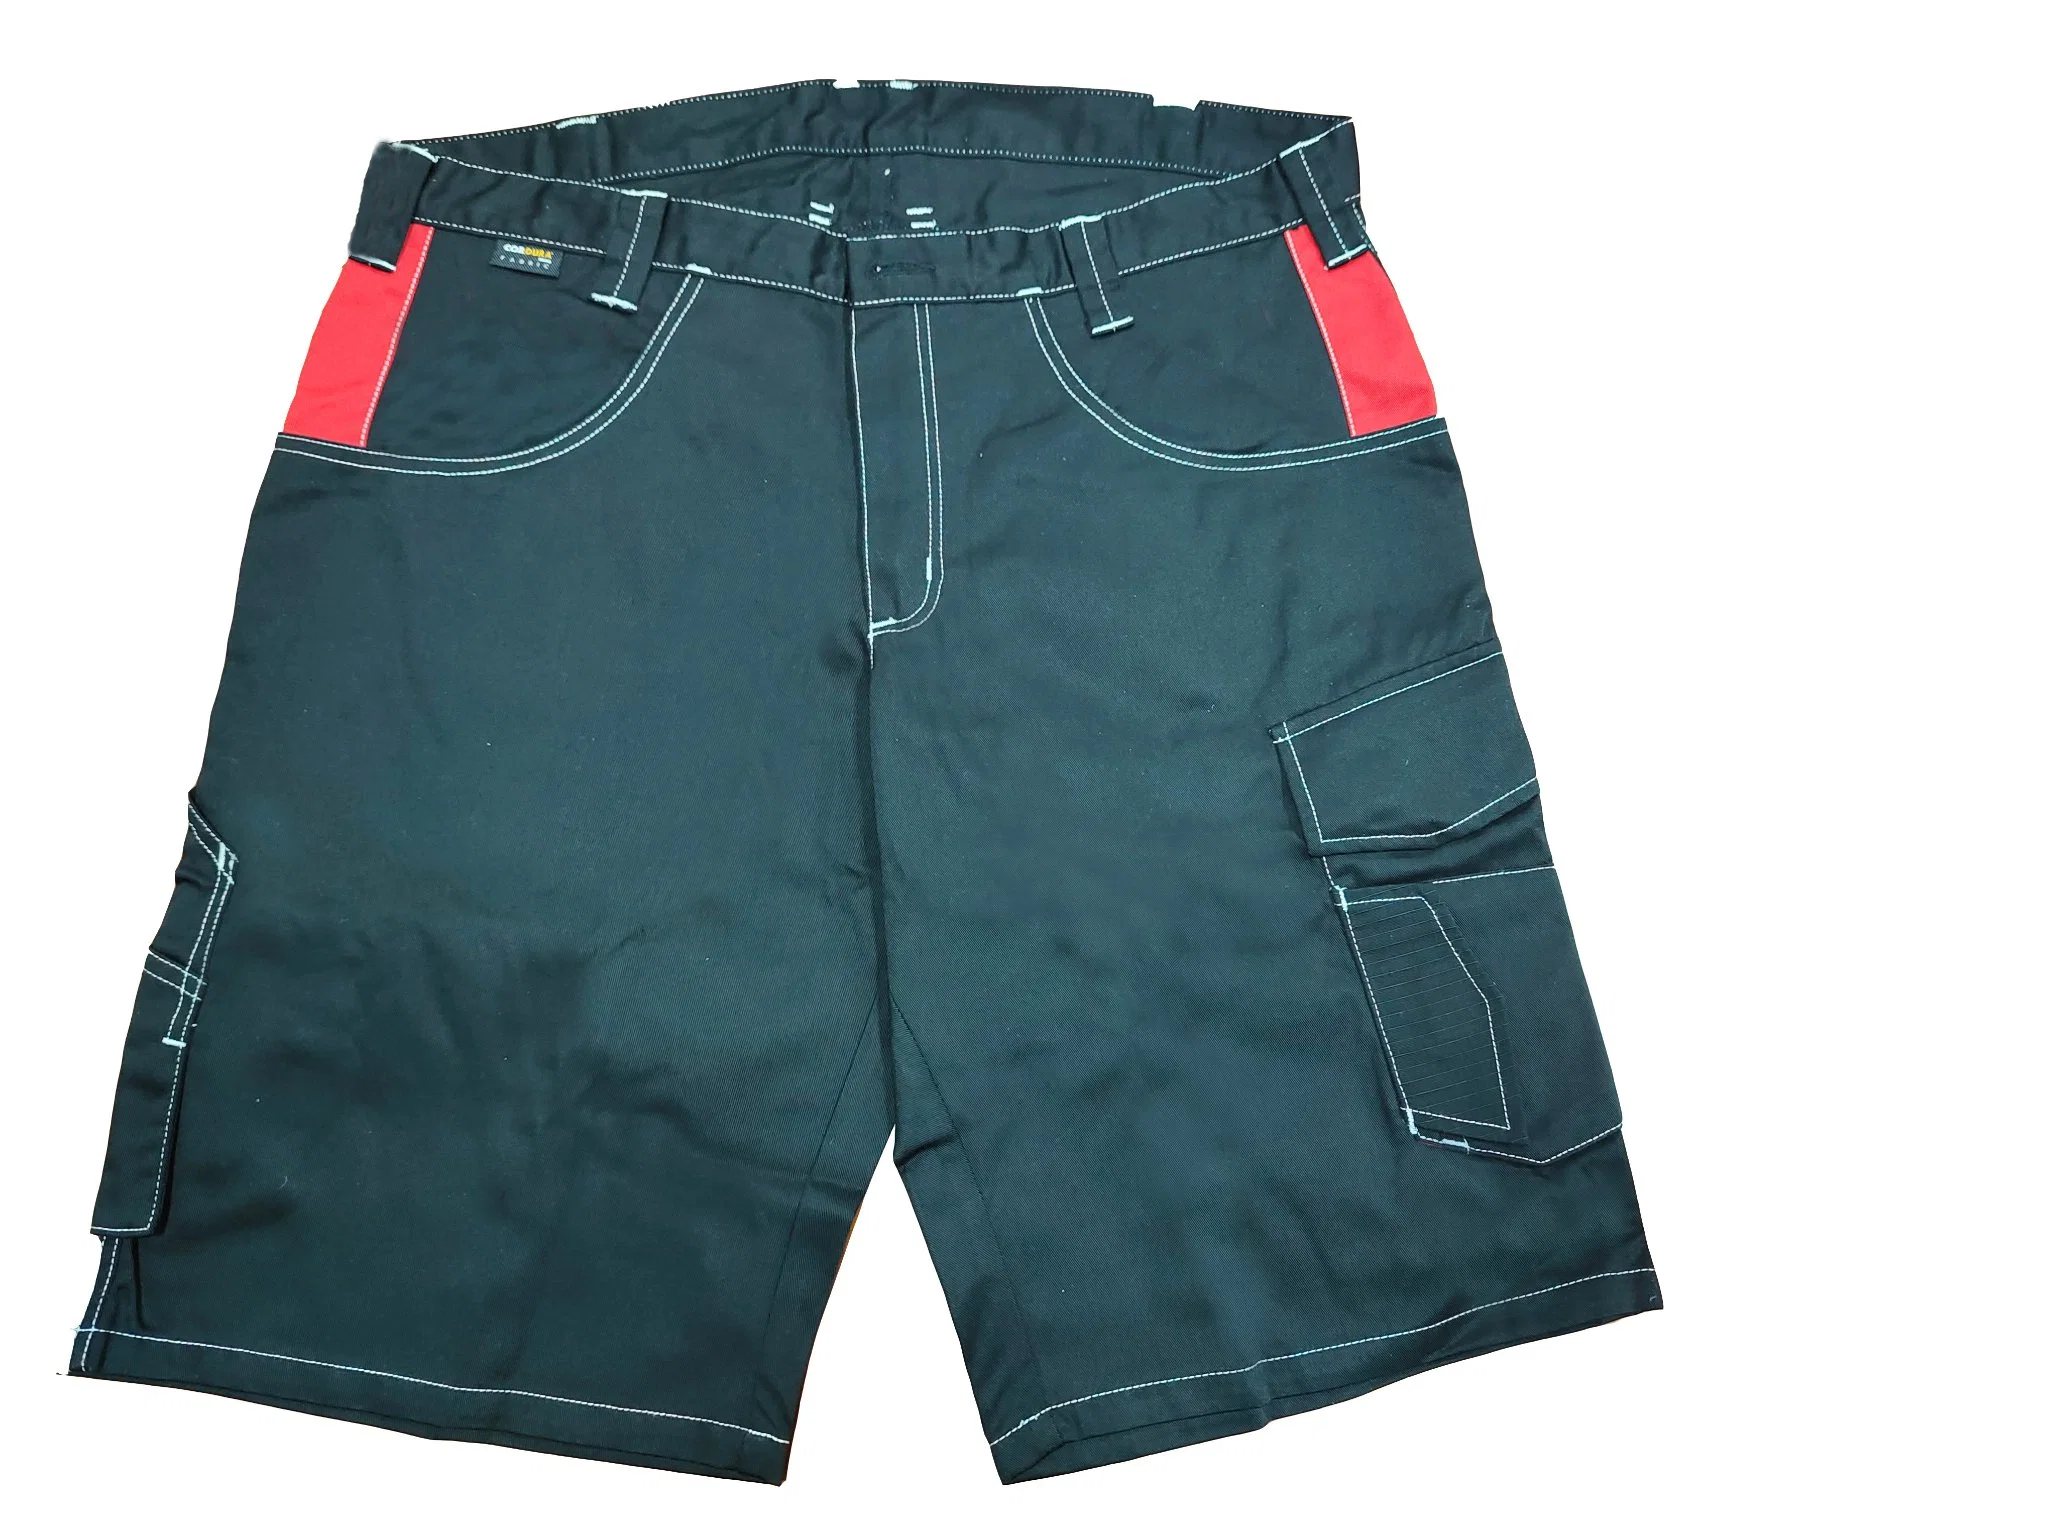 Men's Summer Workwear / Hiking Shorts Cargo Pants